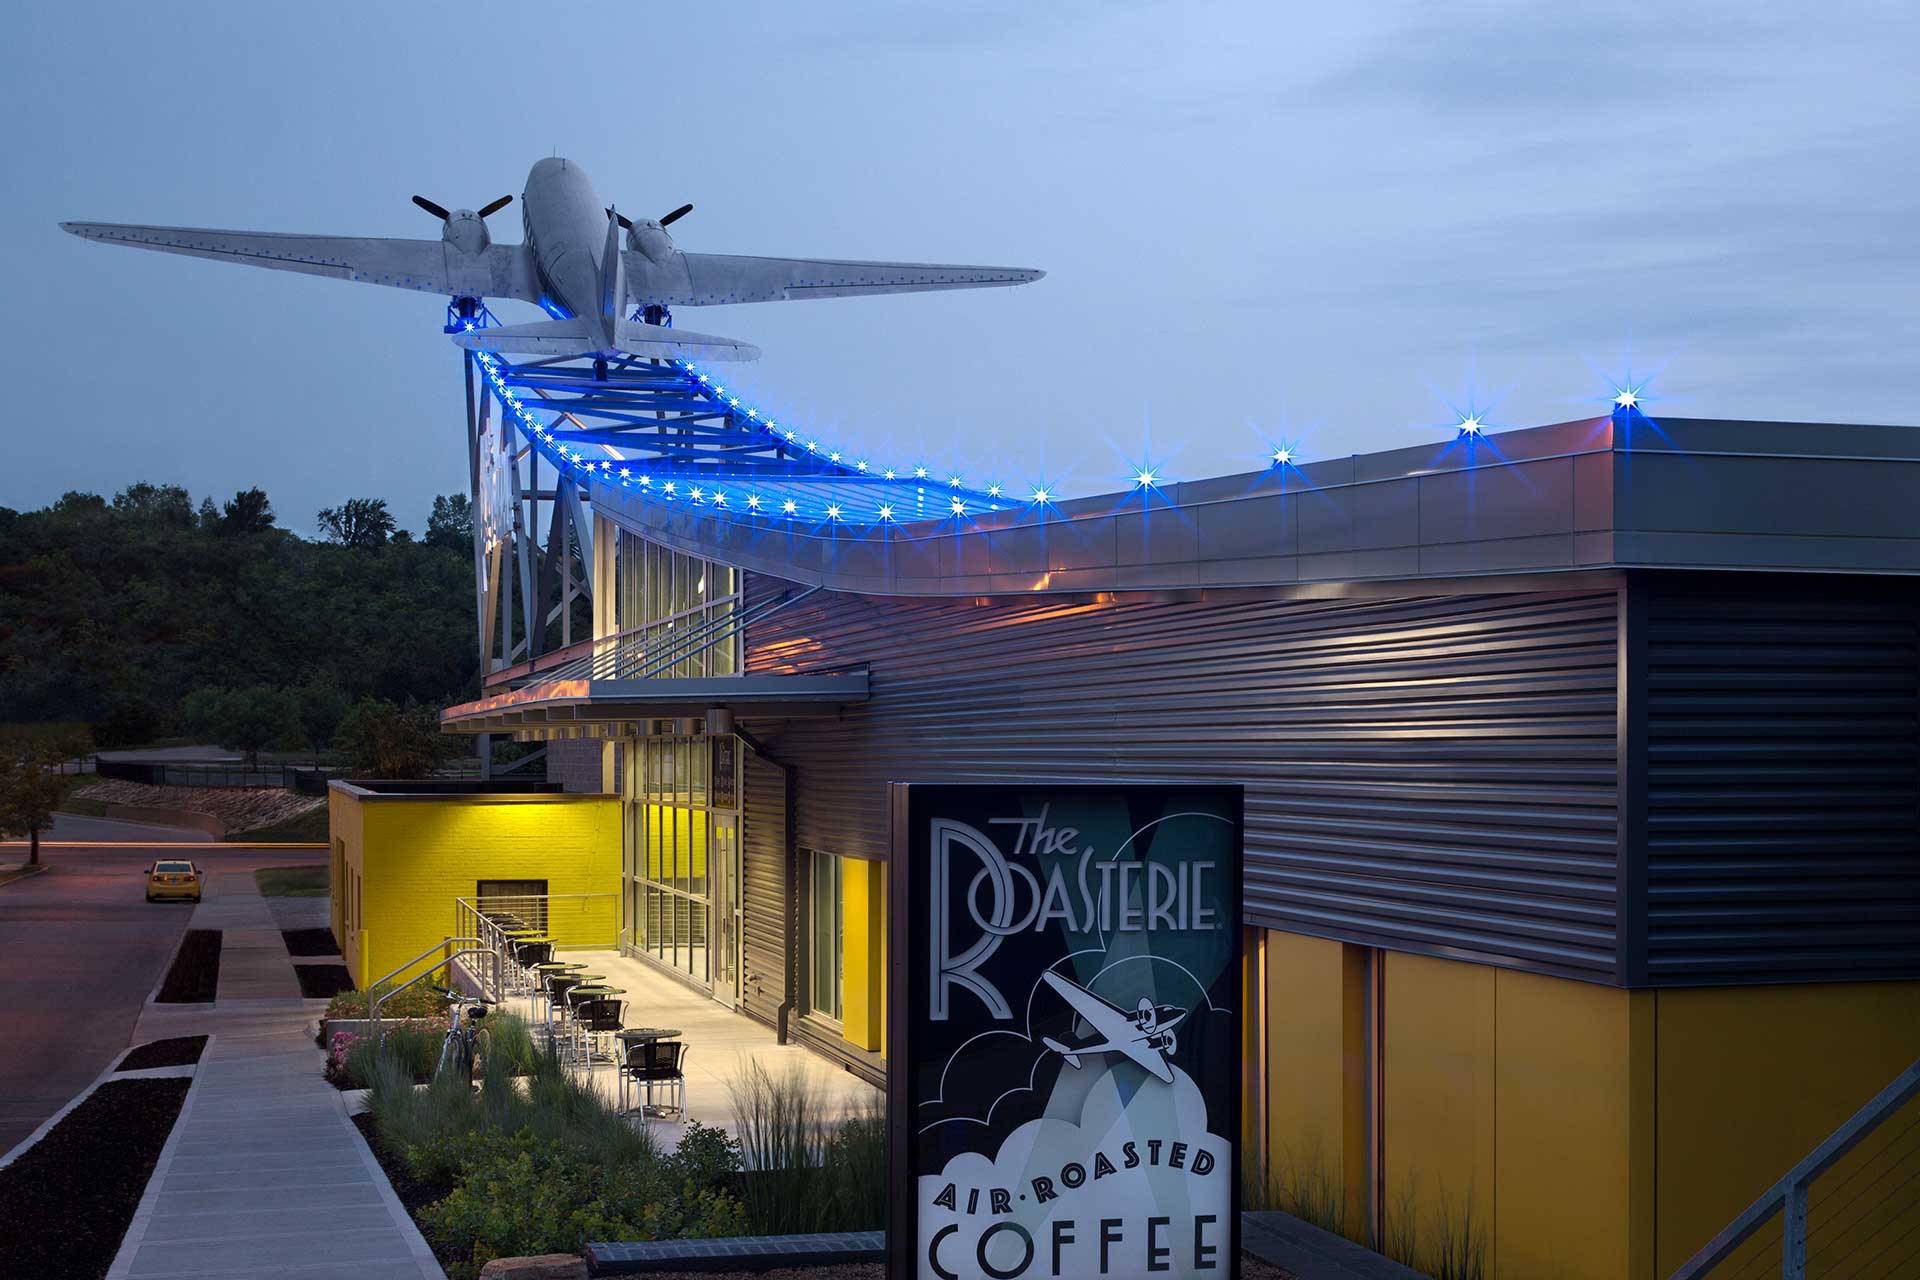 Завод Roasterie Kansas City с двухпропеллерным самолетом, встроенным в конструкцию крыши